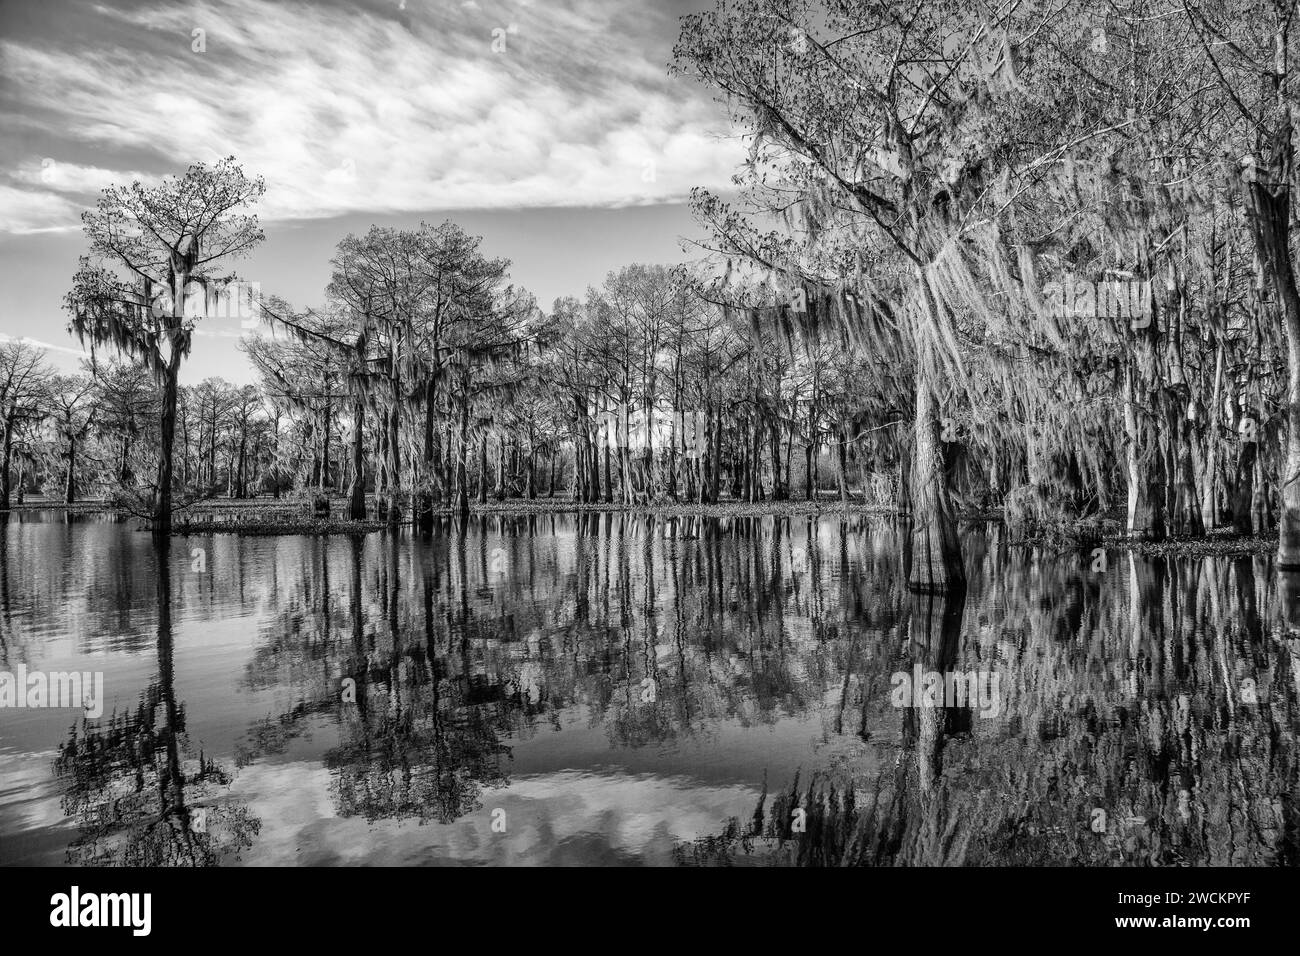 Cipressi calvi drappeggiati con muschio spagnolo riflessi in un lago nel bacino di Atchafalaya in Louisiana. Il Giacinto d'acqua invasivo copre l'acqua. Foto Stock